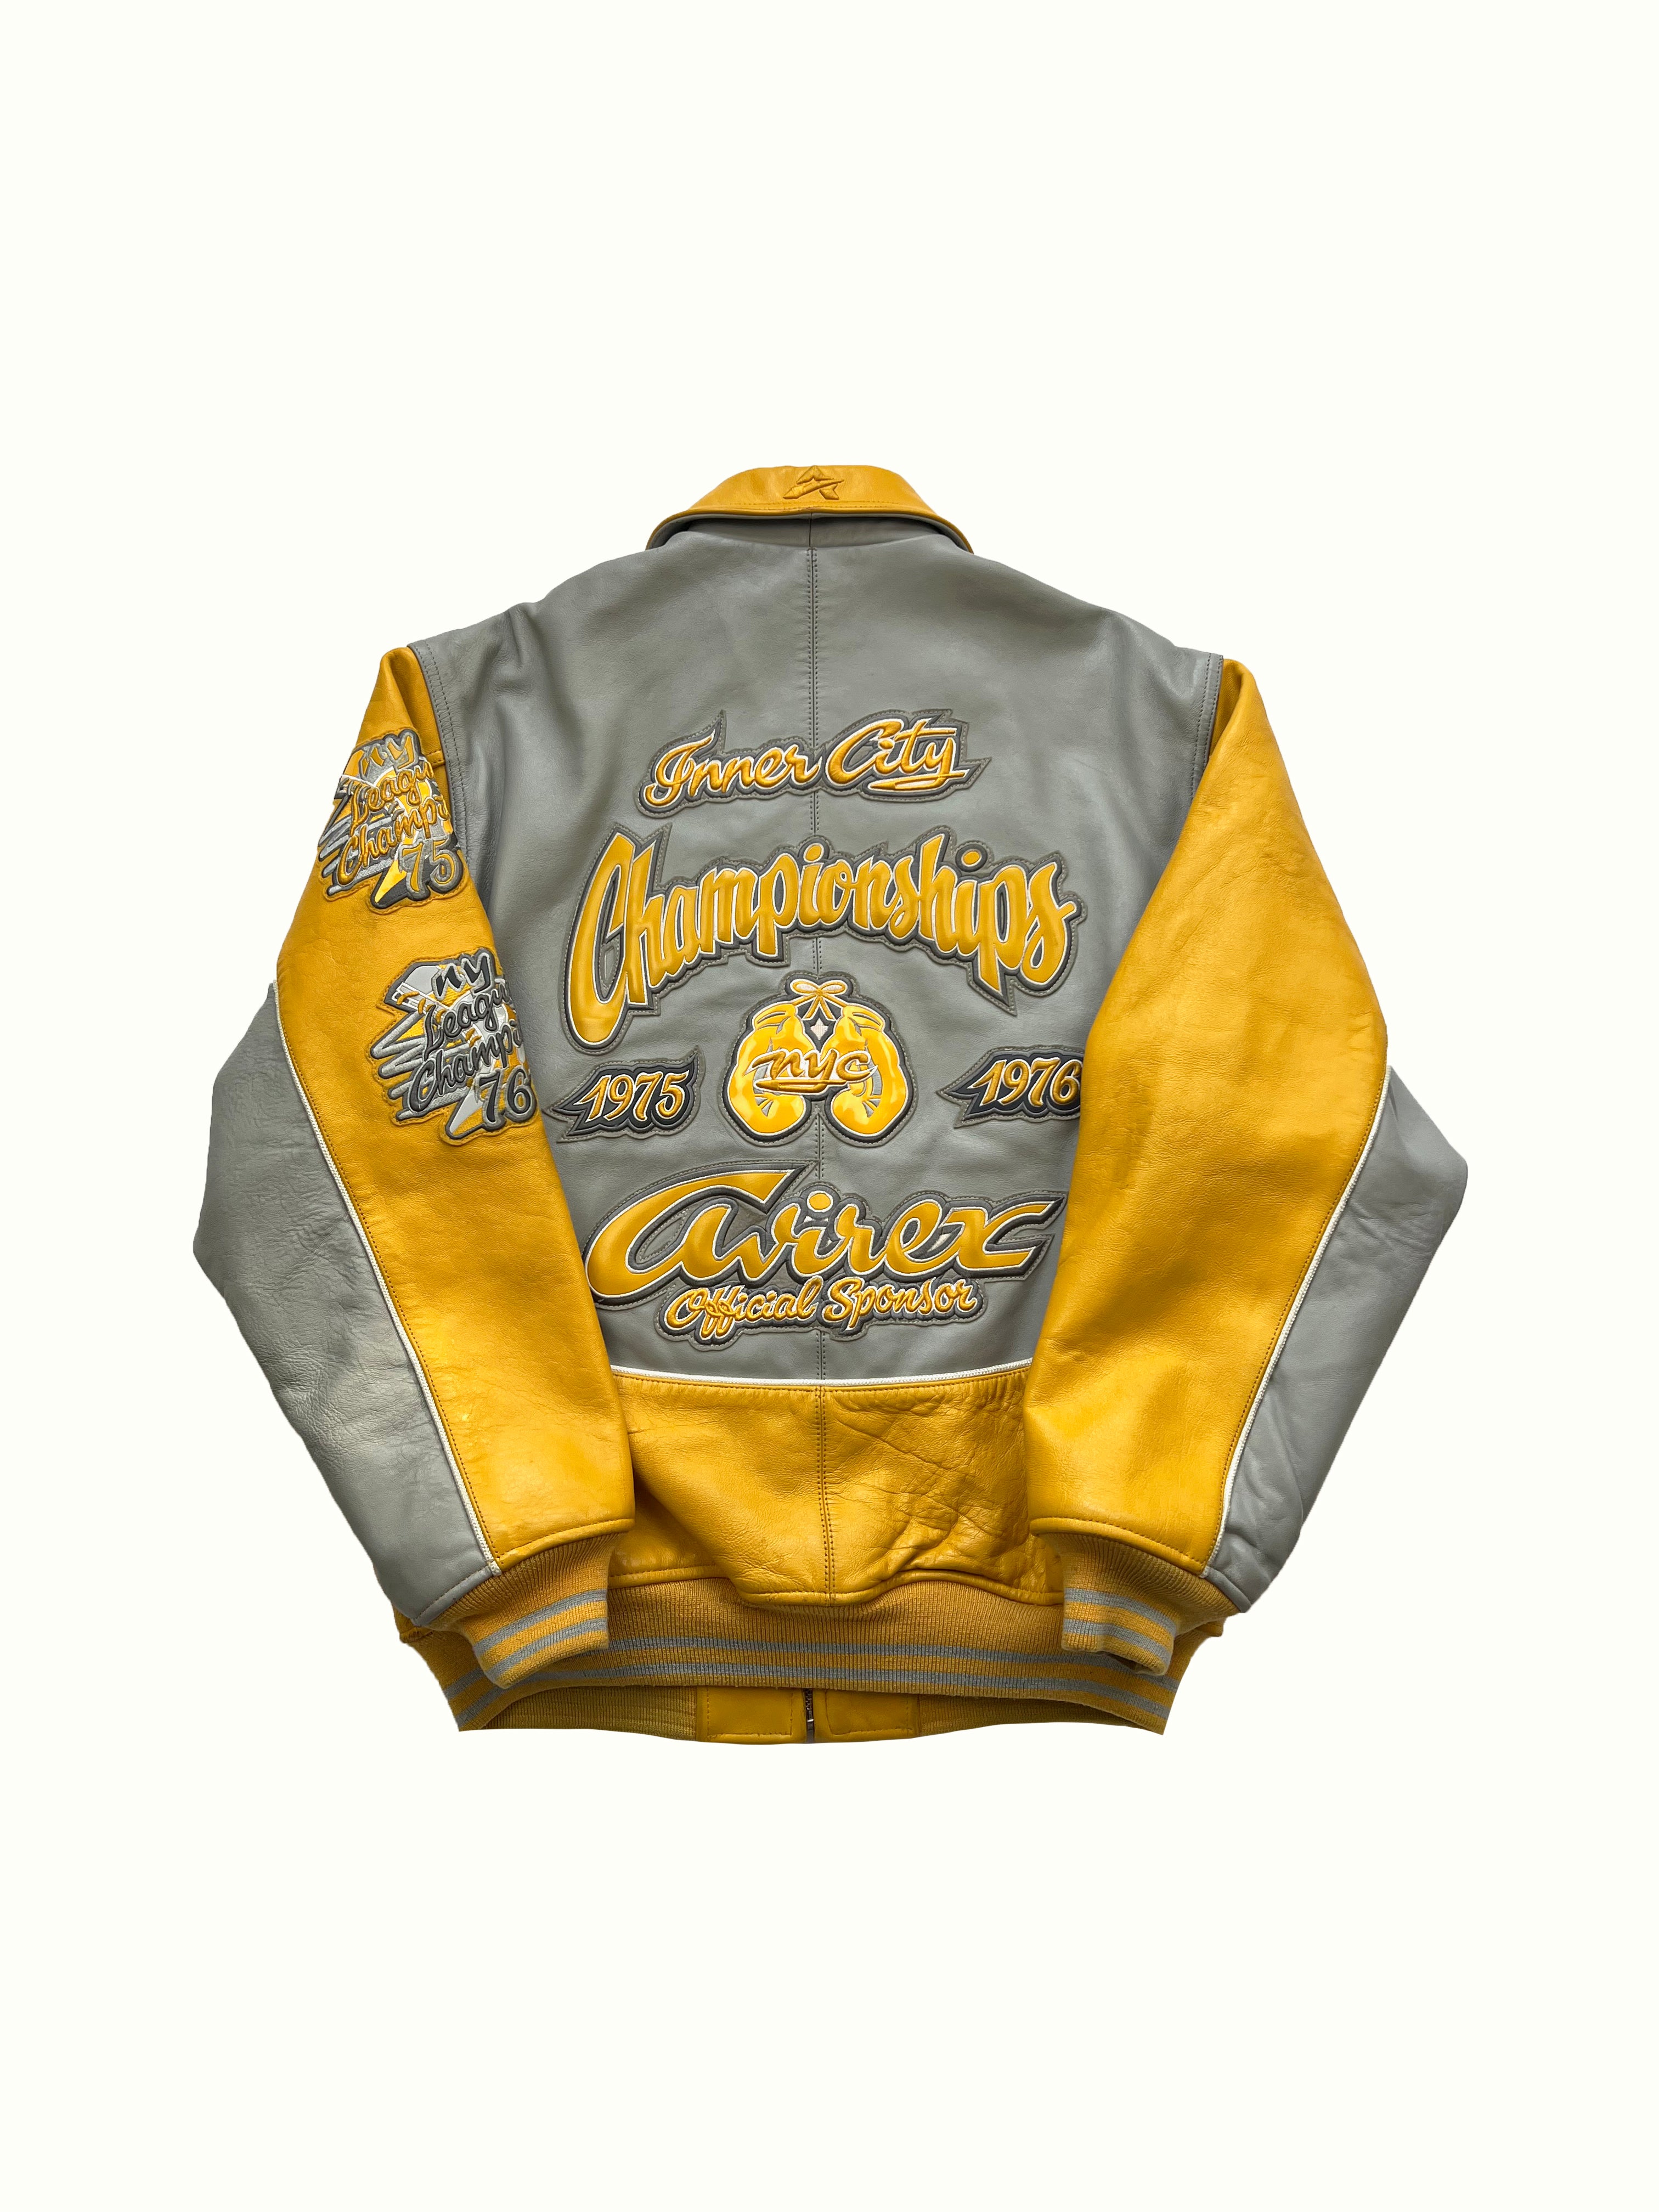 Avirex Yellow 'Inner City Championship' Jacket 2000's